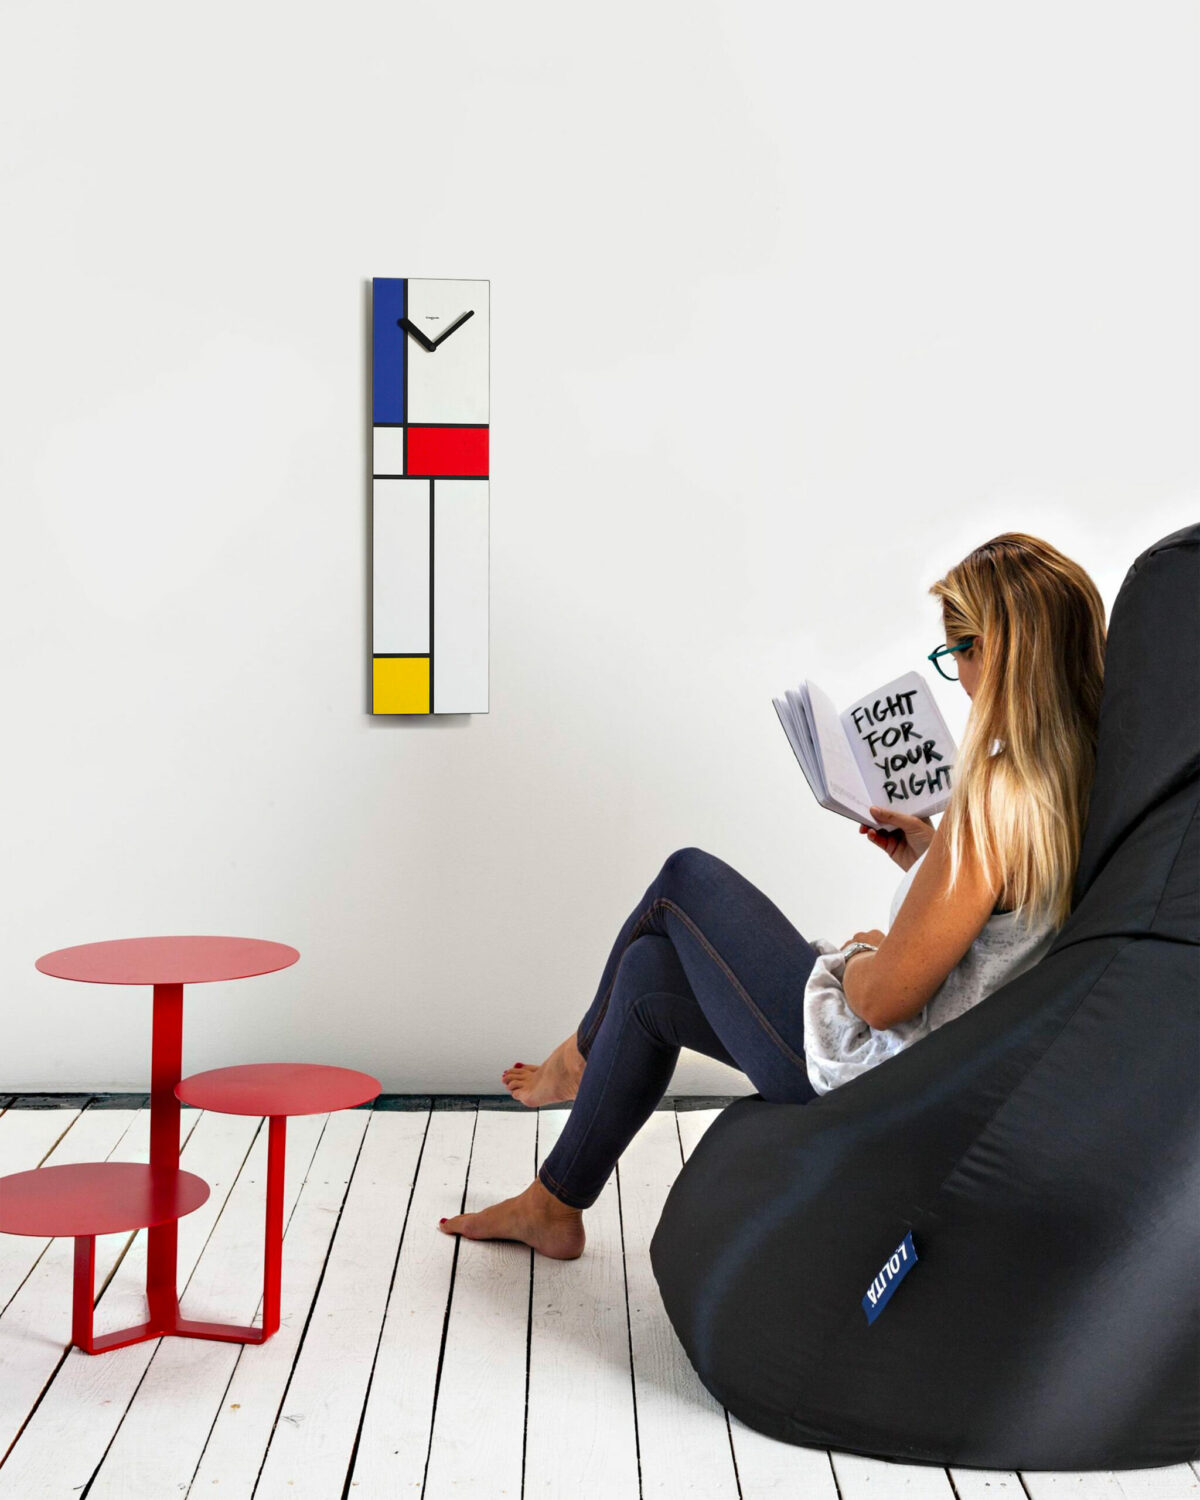 su una parete bianca cattura l'attenzione un orologio verticale ispirato alle geometrie e i colori di Mondrian.